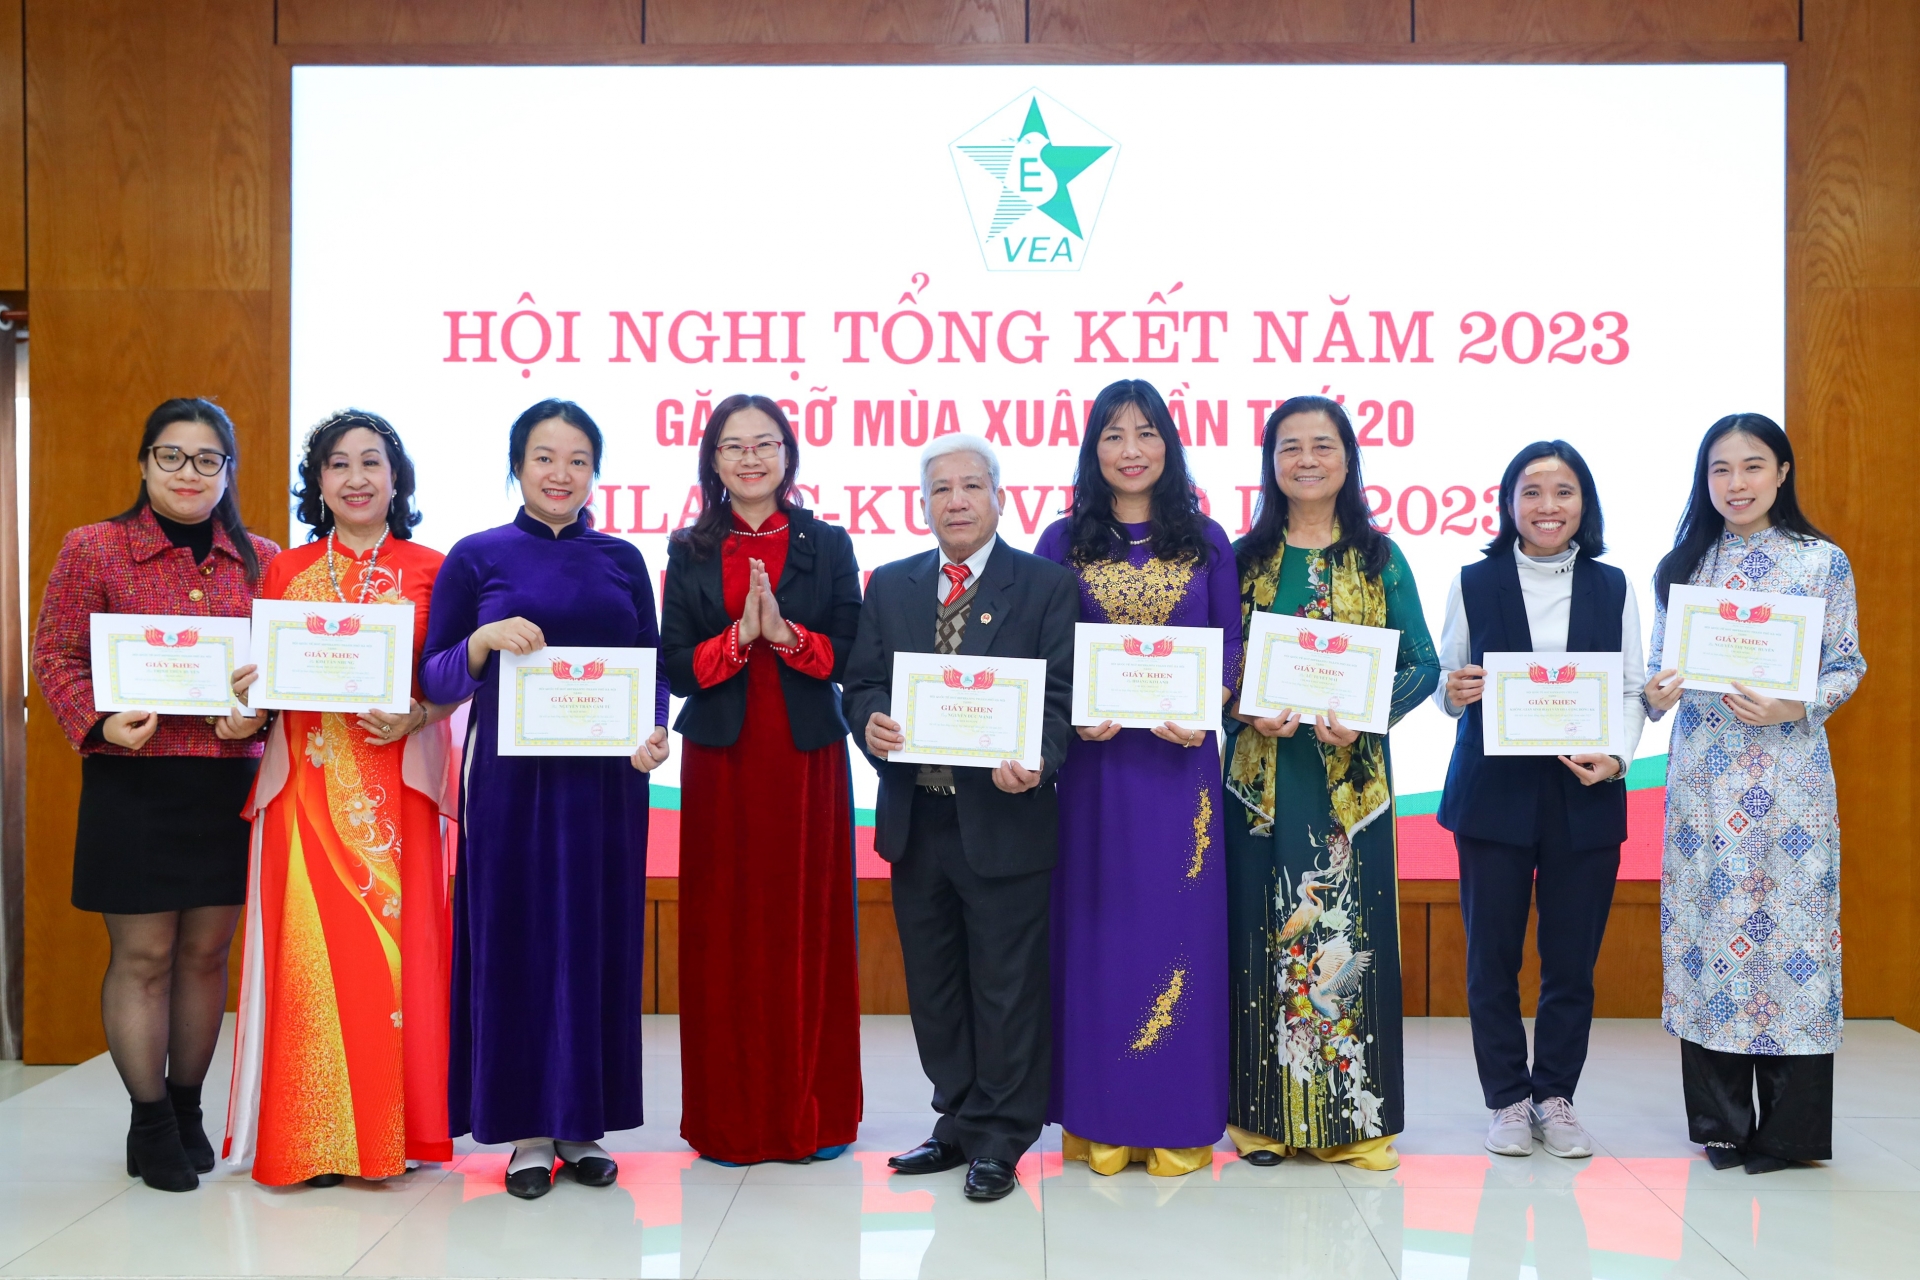 越南世界语协会向11名个人和2个团体颁发了奖状，以表彰他们为协会2023年活动做出的积极贡献。